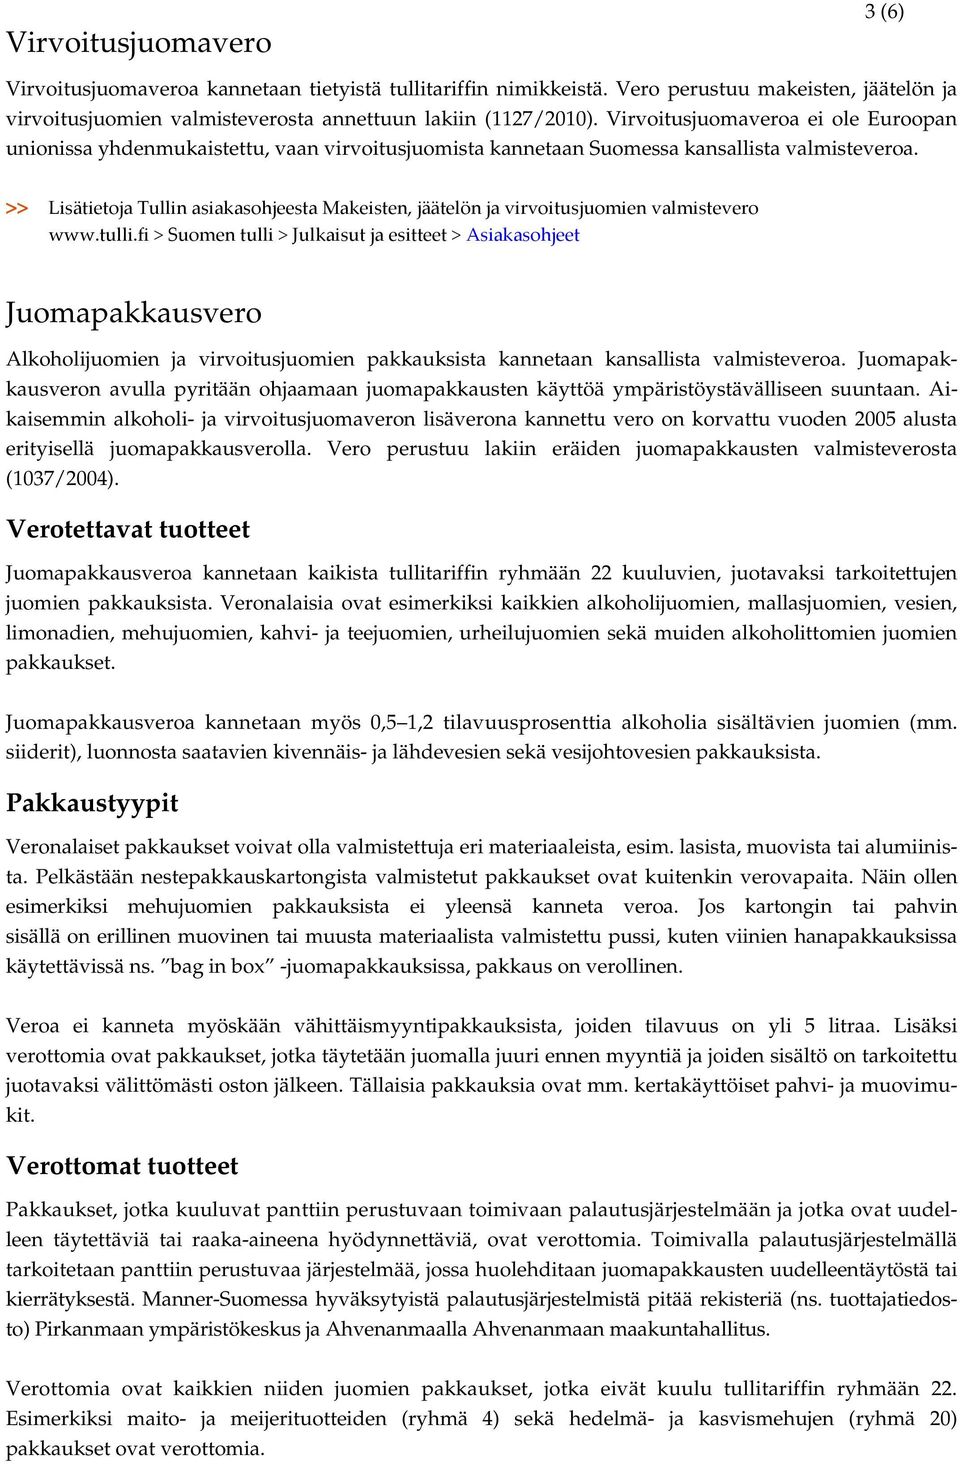 >> Lisätietoja Tullin asiakasohjeesta Makeisten, jäätelön ja virvoitusjuomien valmistevero www.tulli.